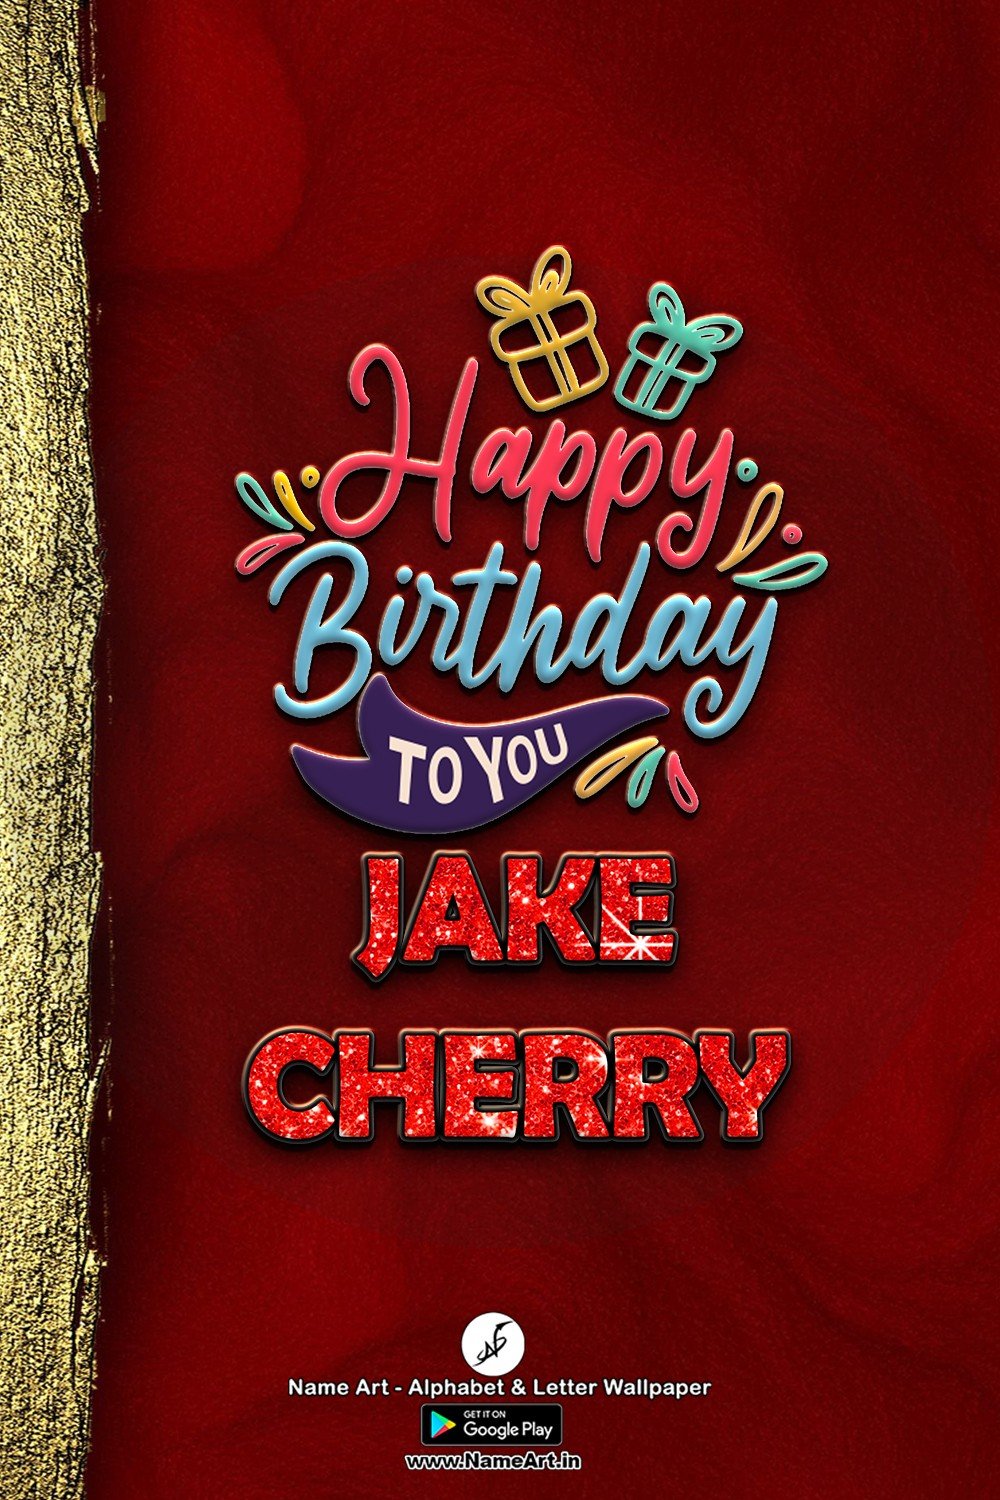 Jake Cherry | Whatsapp Status Jake Cherry In USA| Happy Birthday Jake Cherry !! | New Whatsapp Status Jake Cherry Images |